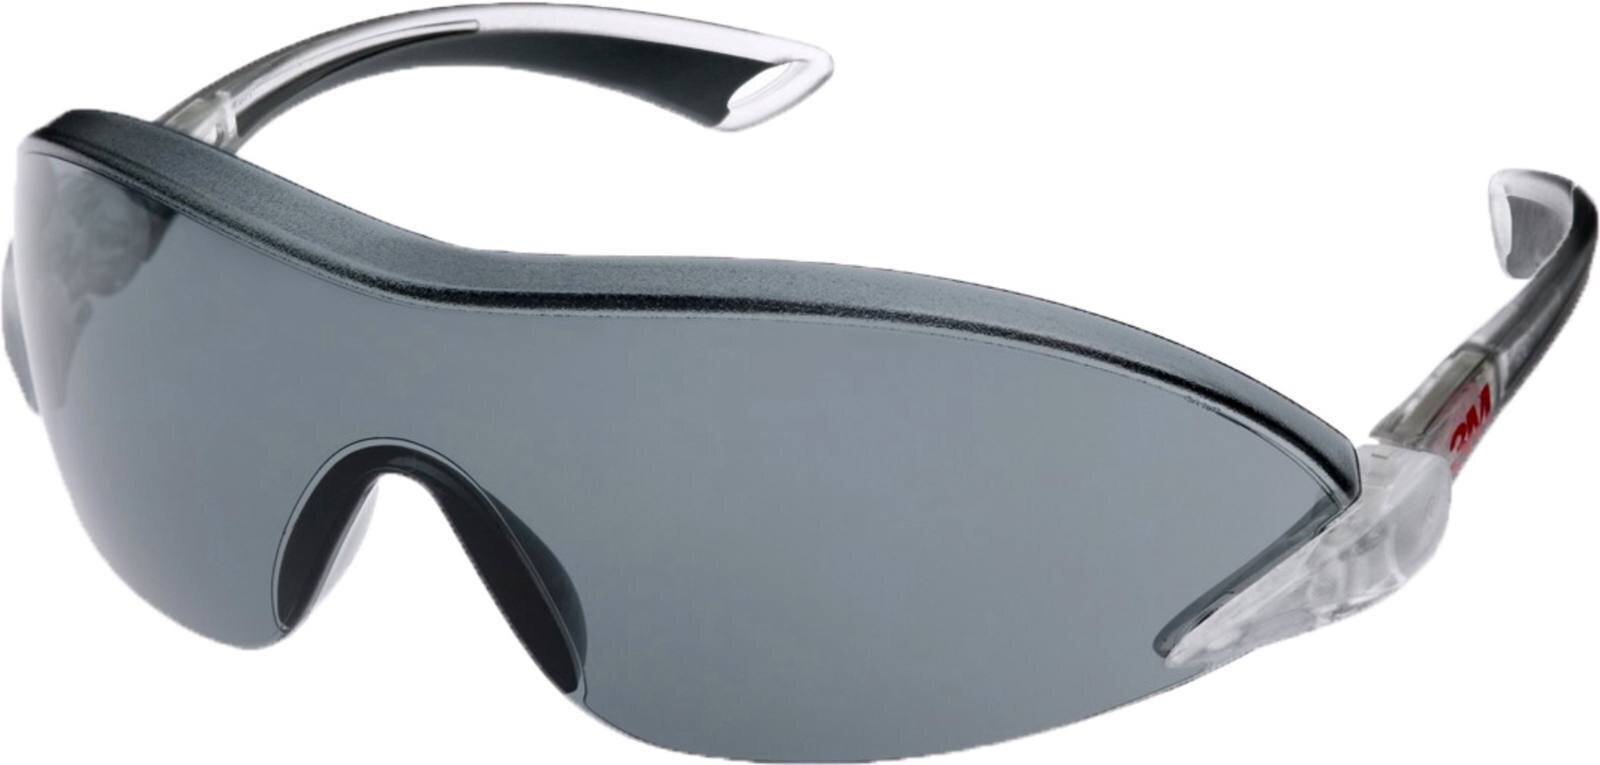 3M 2841 Schutzbrille AS/AF/UV, PC, grau getönt, einstellbare Bügellänge und -neigung, softe Bügelenden